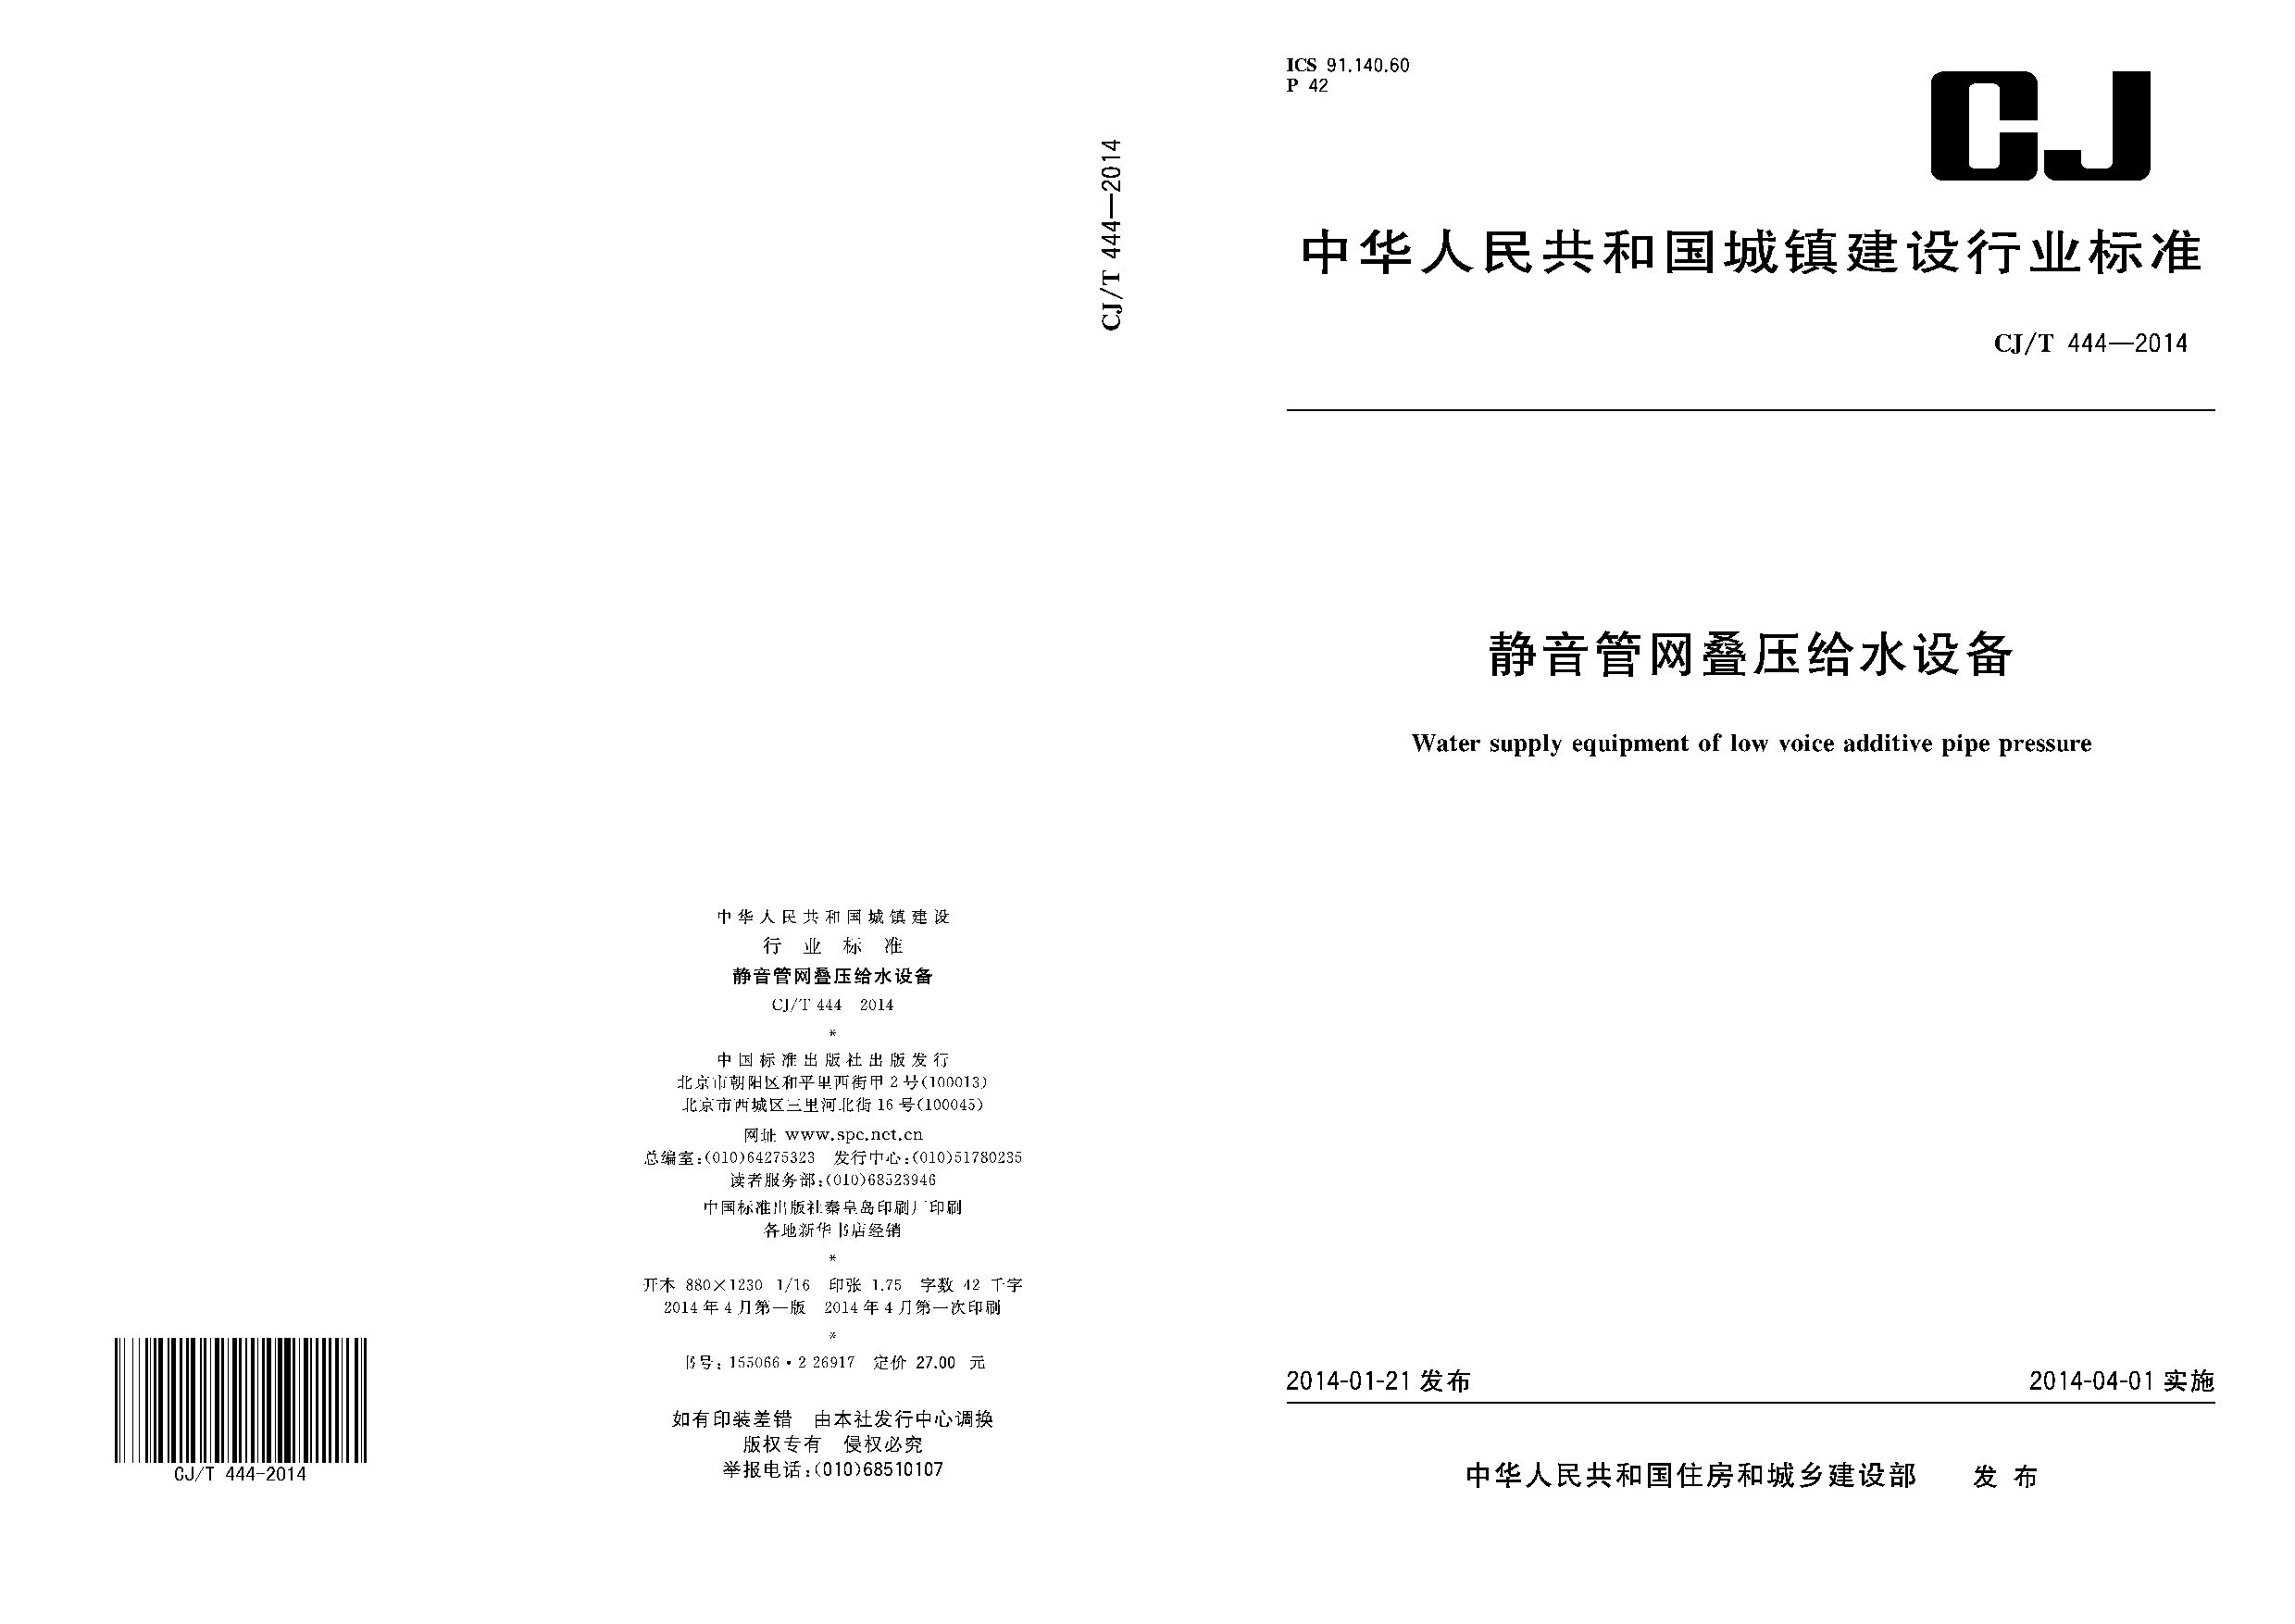 CJ/T 444-2014封面图